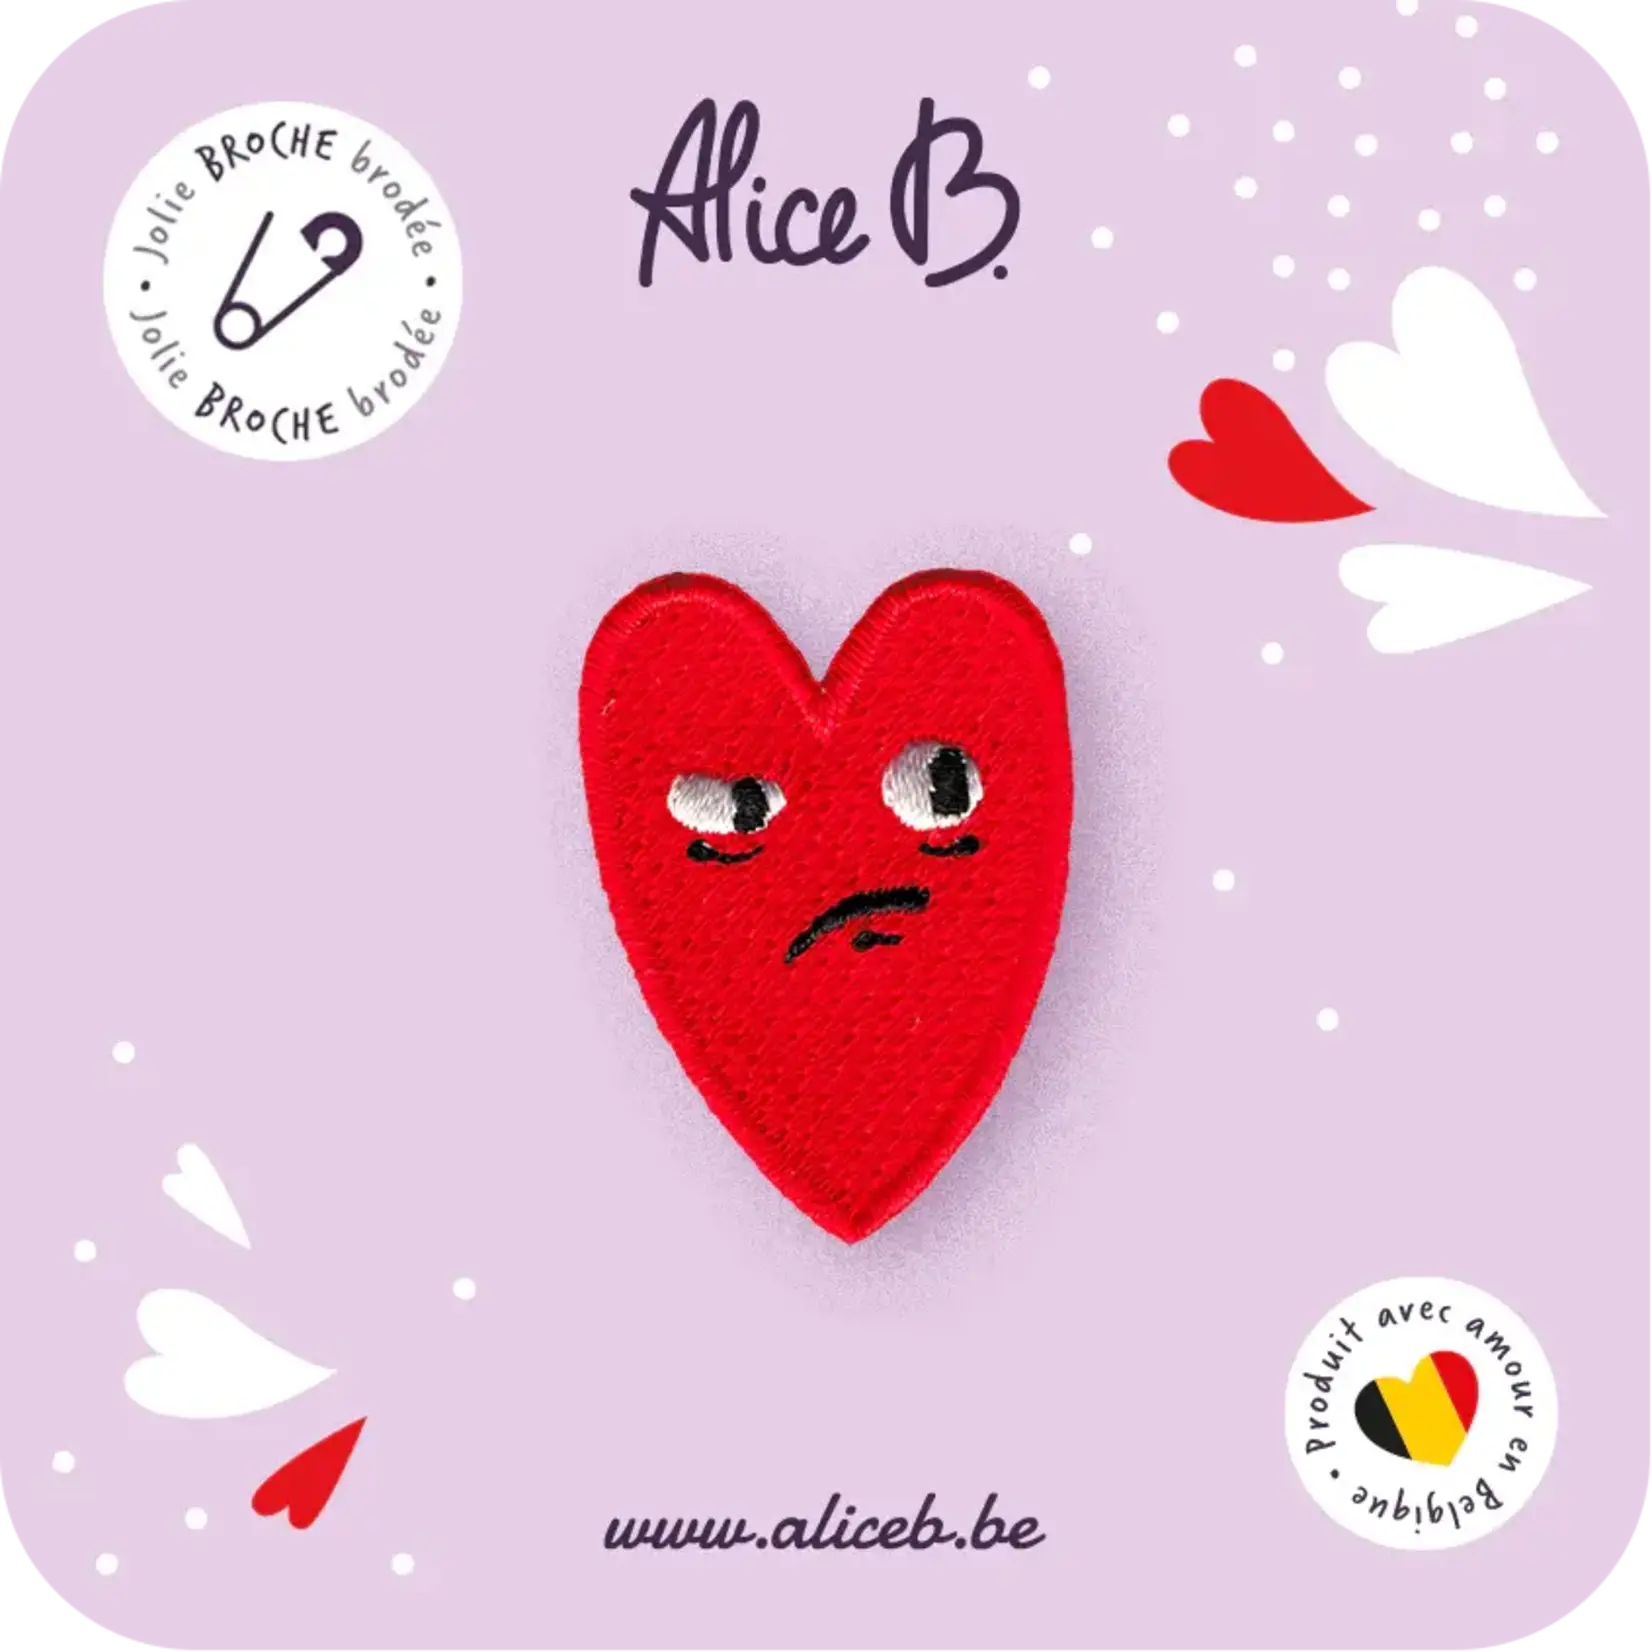 ALICE B. ALICE B - Que dit ton coeur